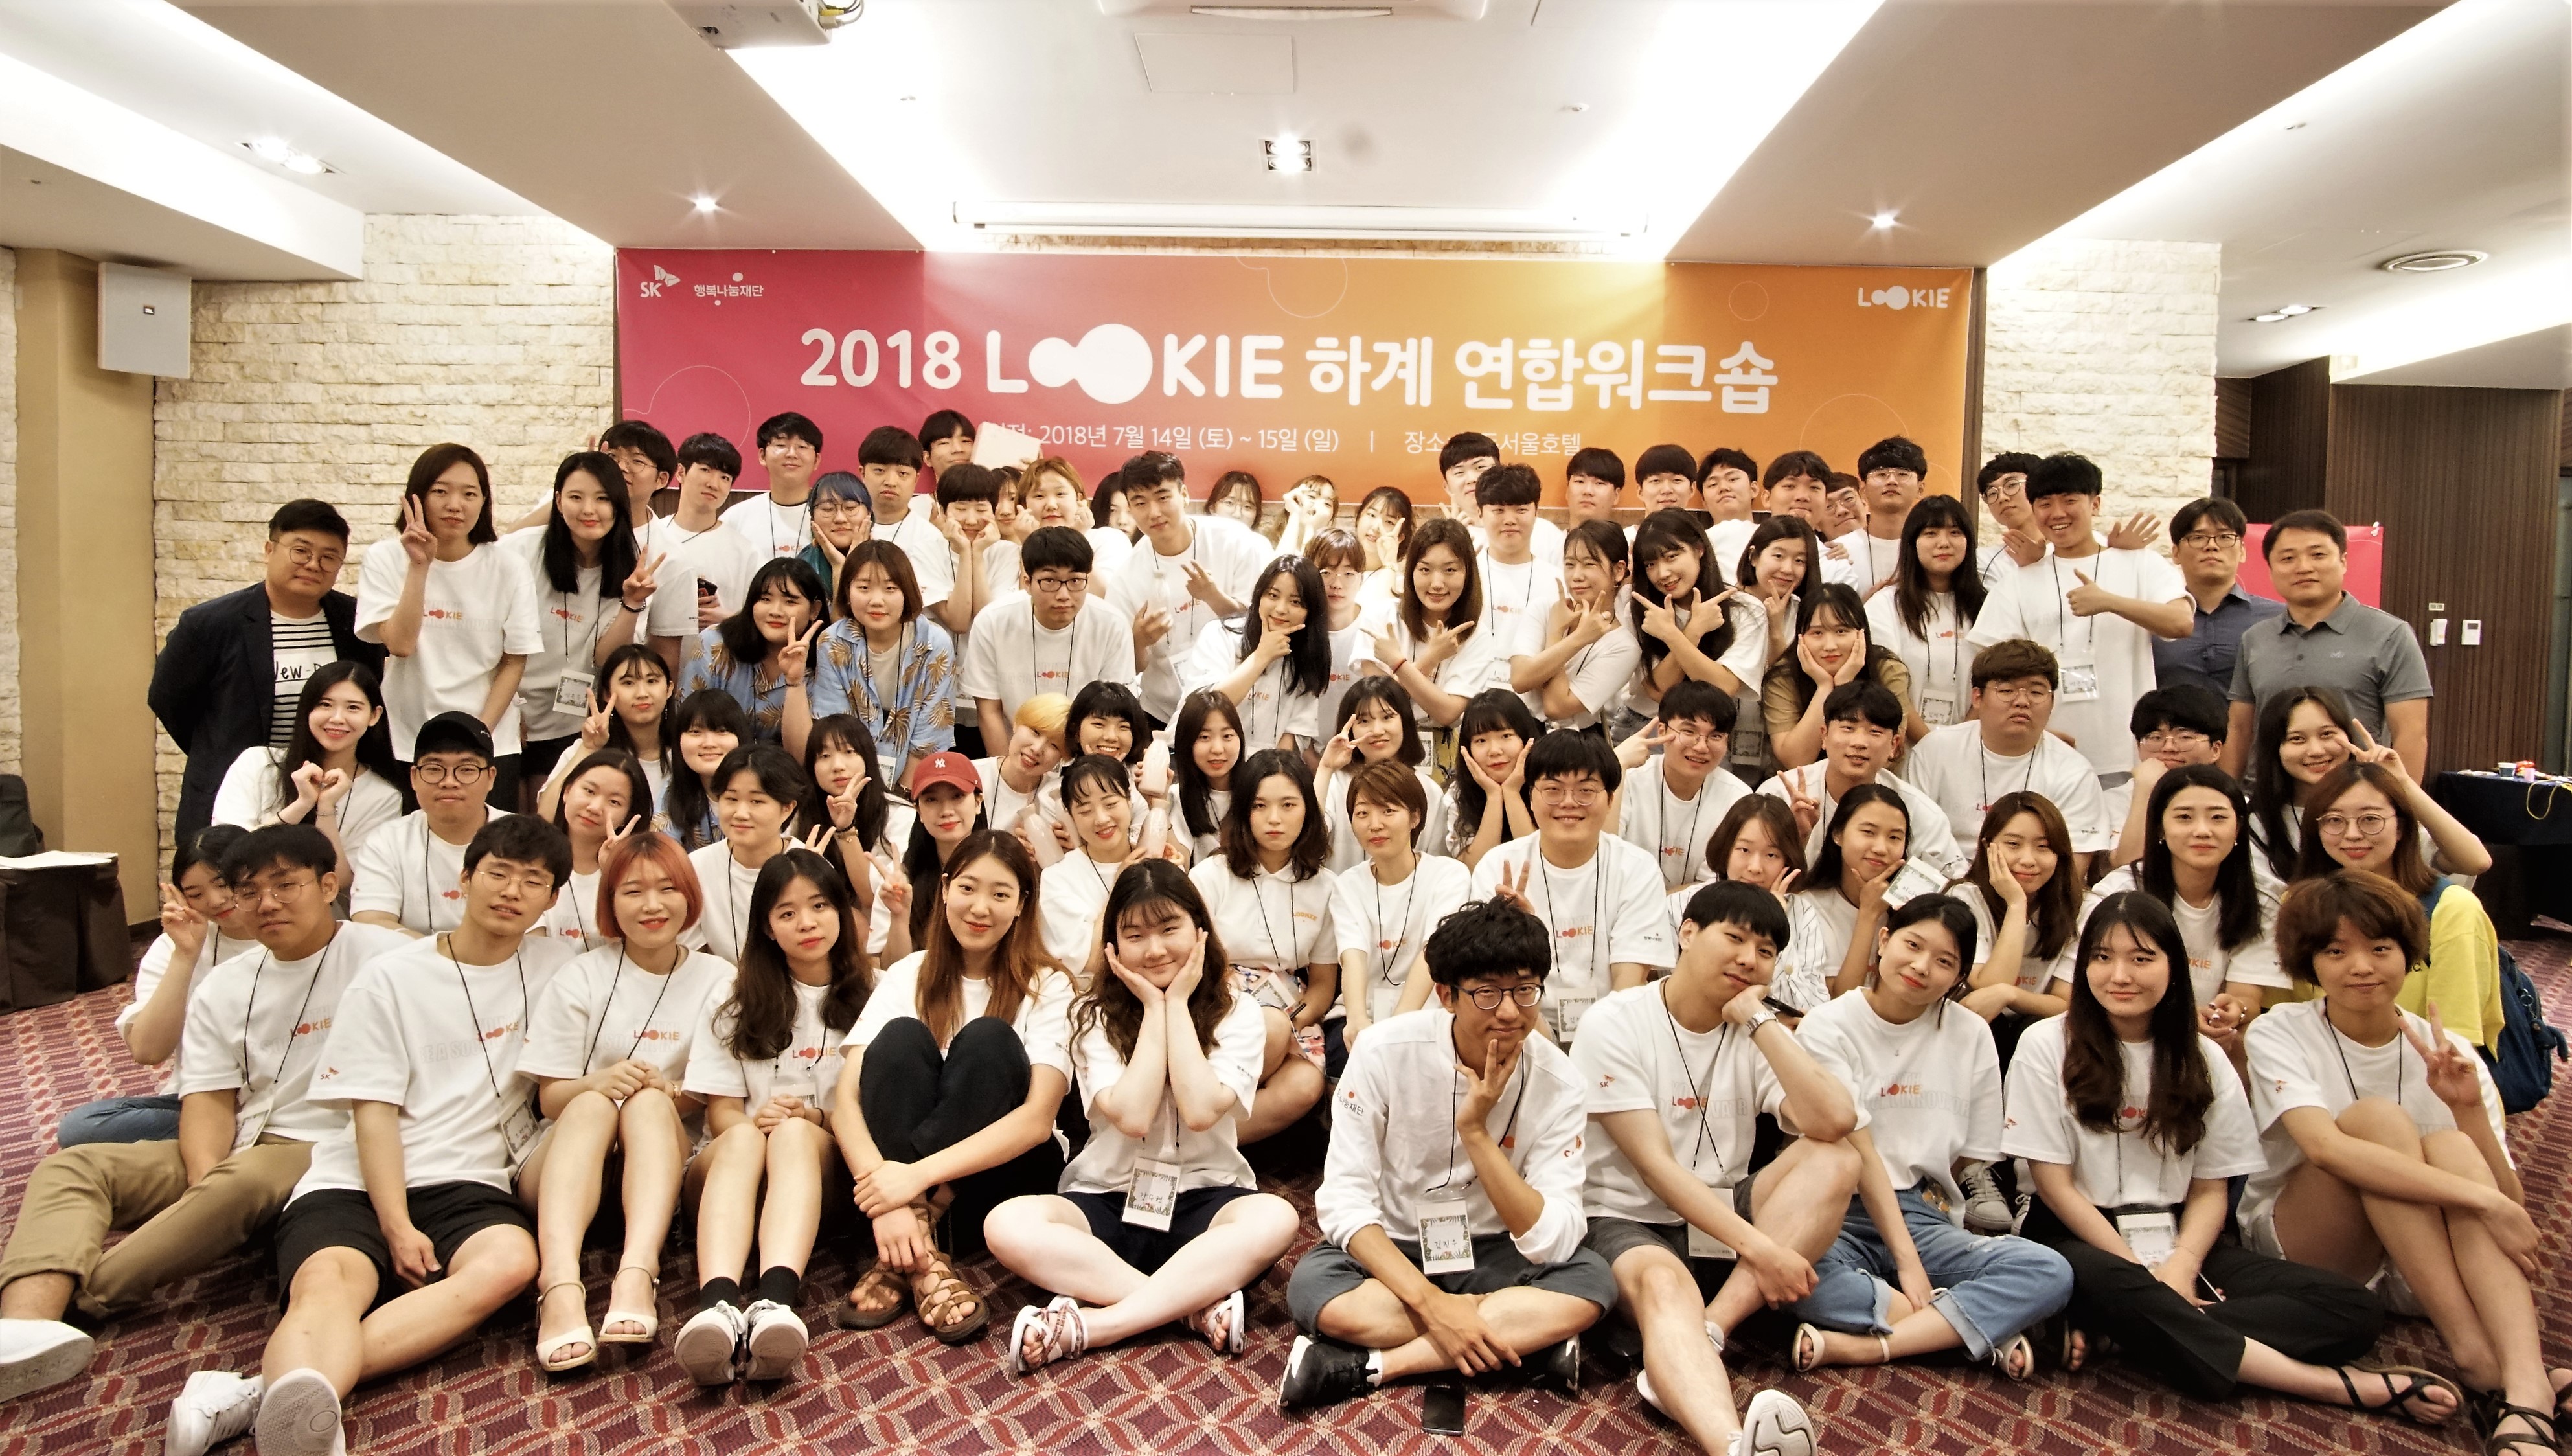 2018 LOOKIE 하계 연합워크숍 단체 사진